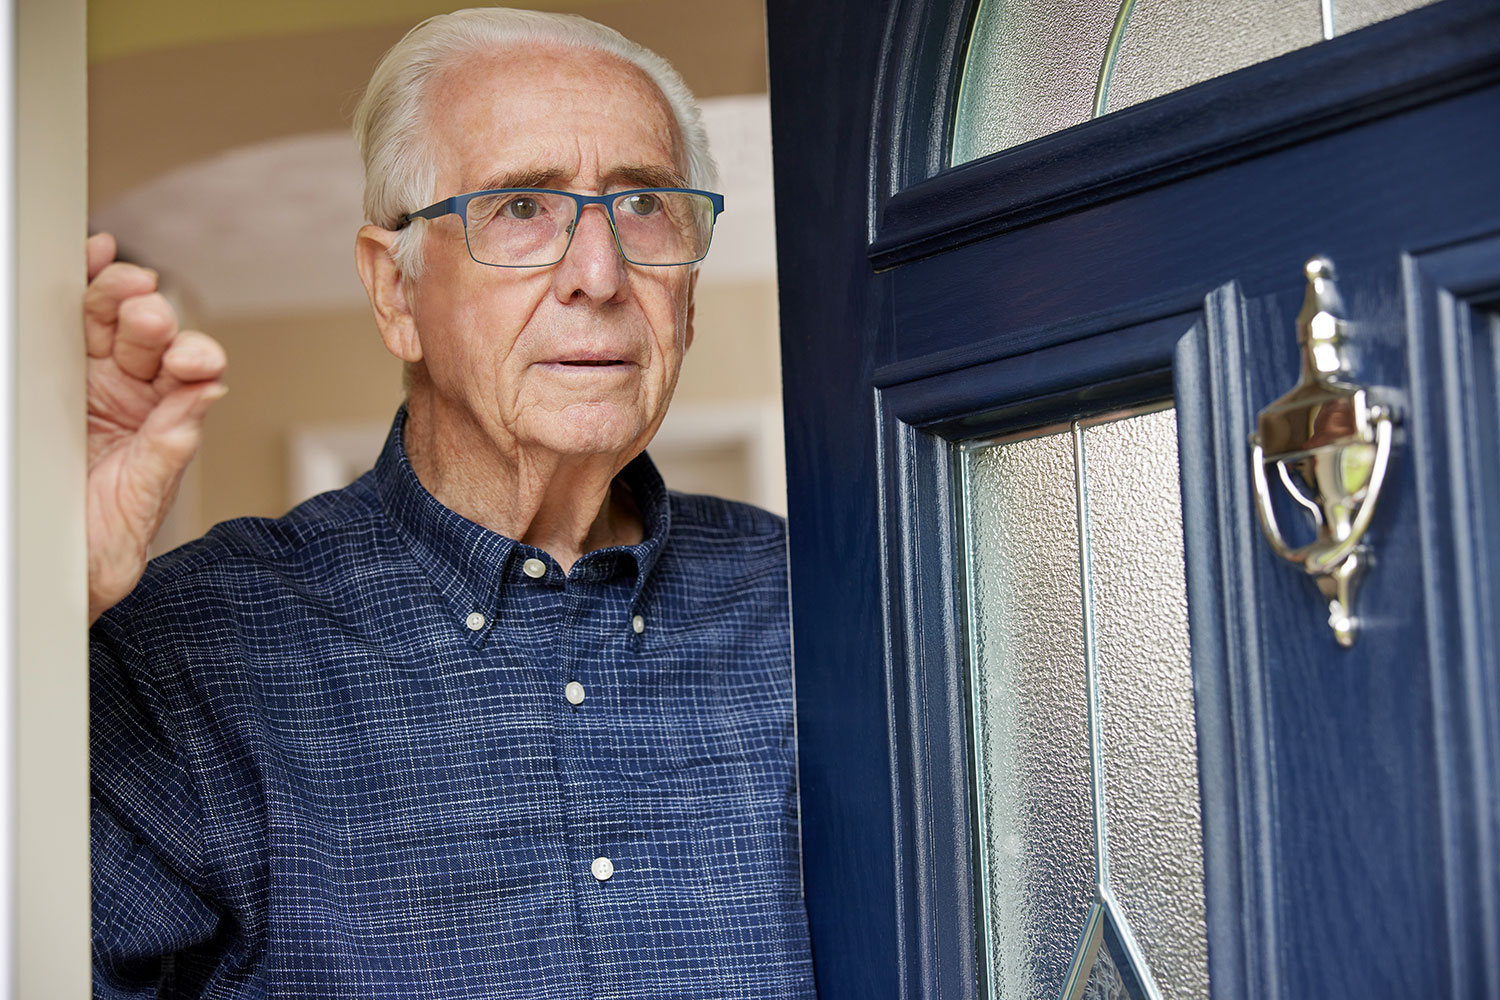 un anciano abre la puerta de su casa a una persona desconocida